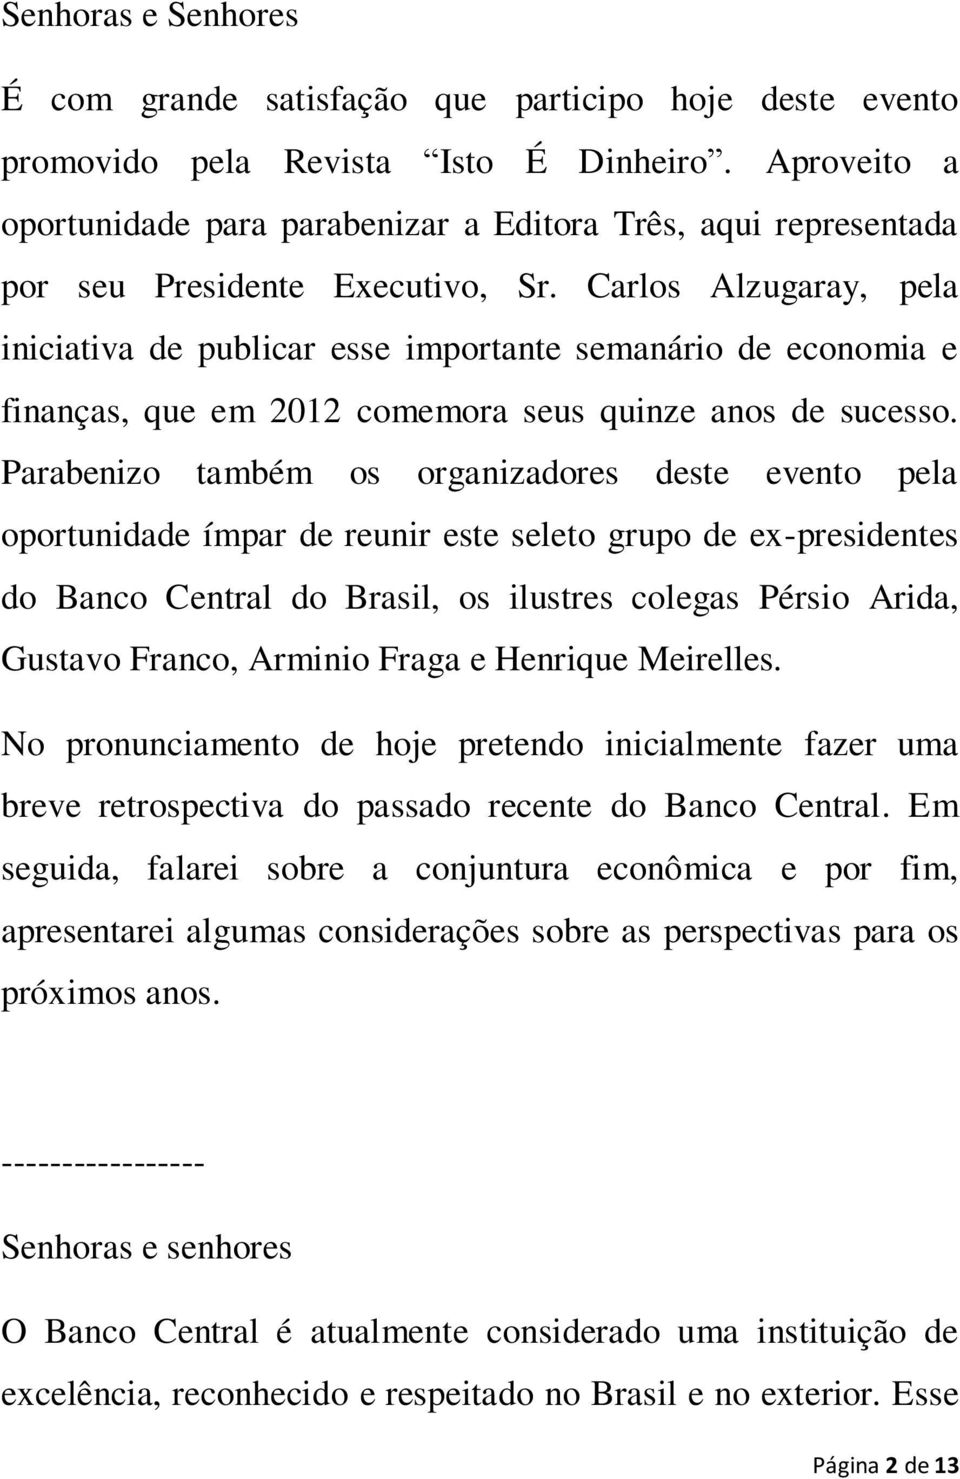 Carlos Alzugaray, pela iniciativa de publicar esse importante semanário de economia e finanças, que em 2012 comemora seus quinze anos de sucesso.